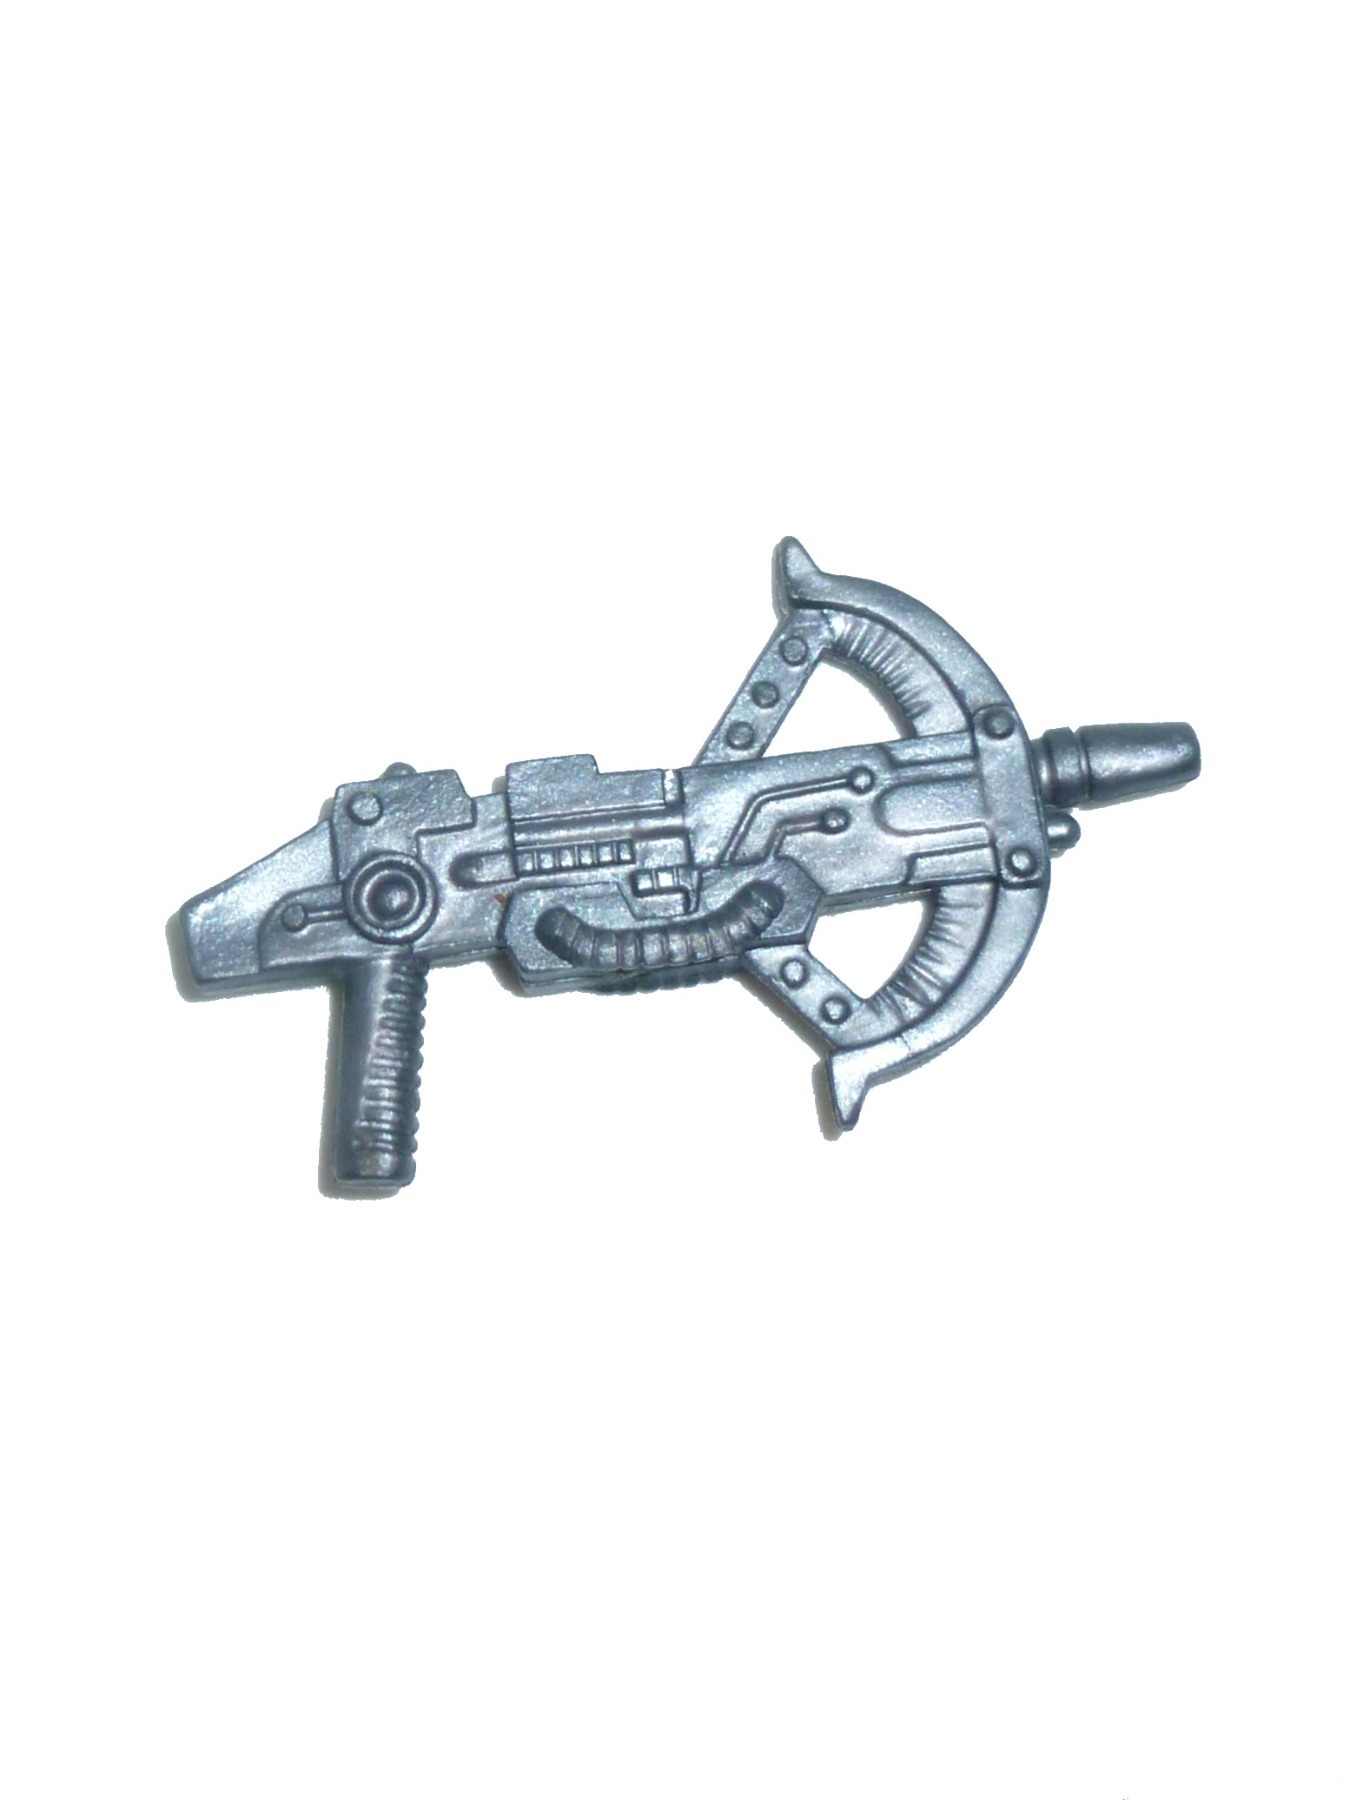 Castle Grayskull - Waffe / Blaster Zubehör